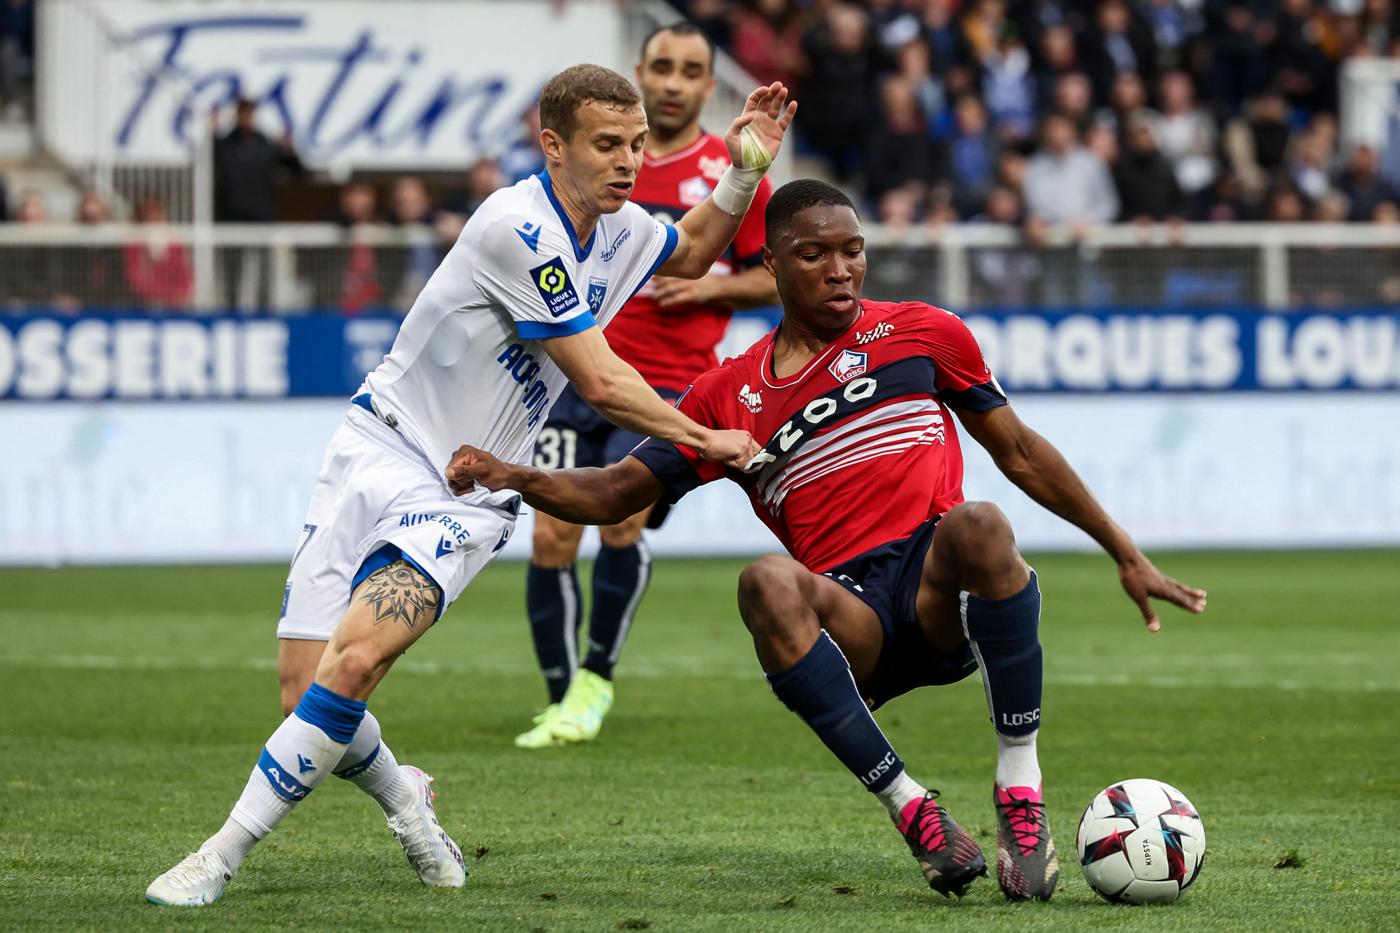 Auxerre v Lille - 1-1. Mistrzostwa Francji, runda 32. Przegląd meczu, statystyki.